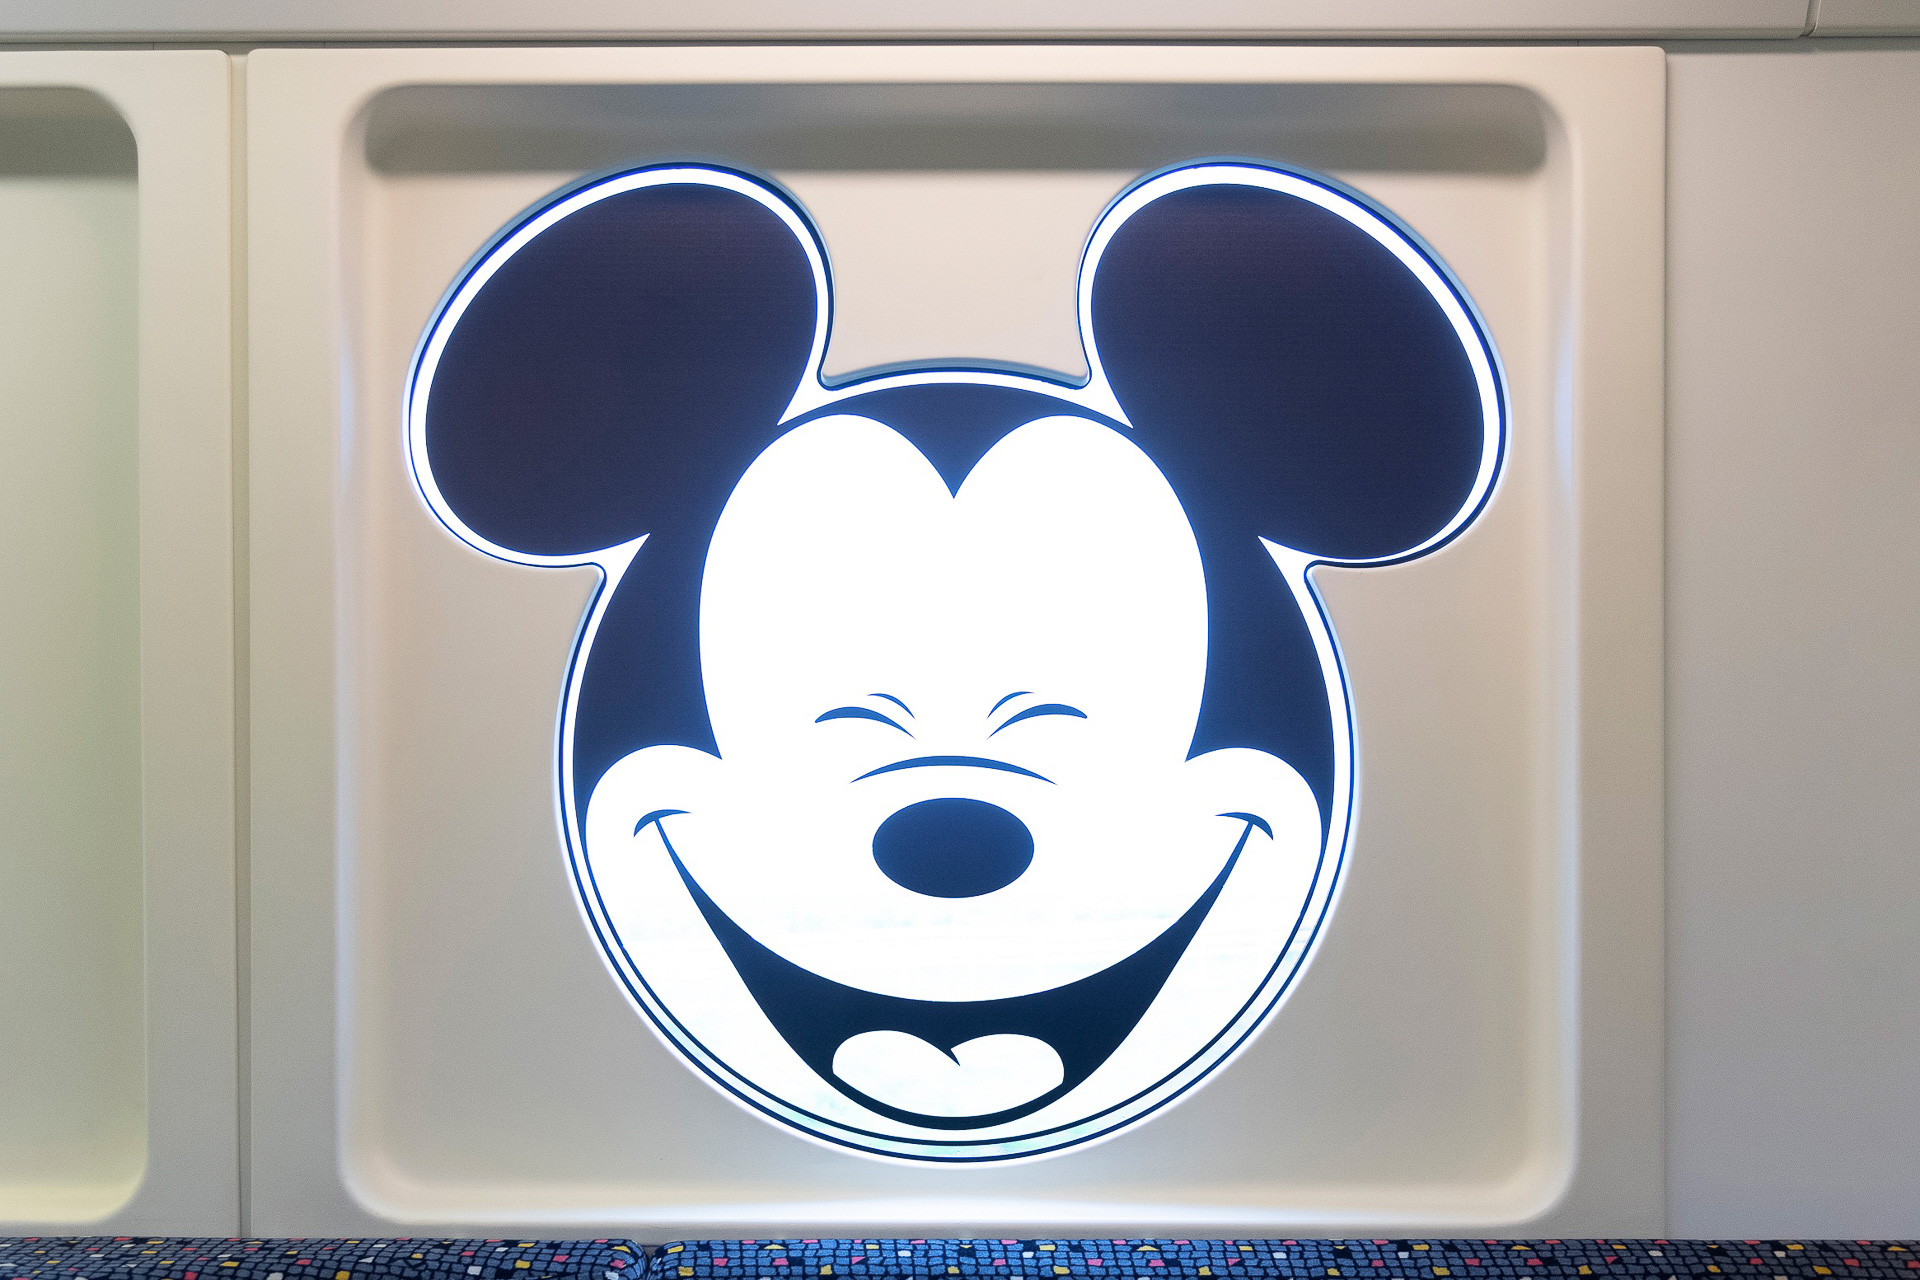 ディズニーリゾートライン ミッキーマウスデザインのラッピングモノレール登場 トラベル Watch